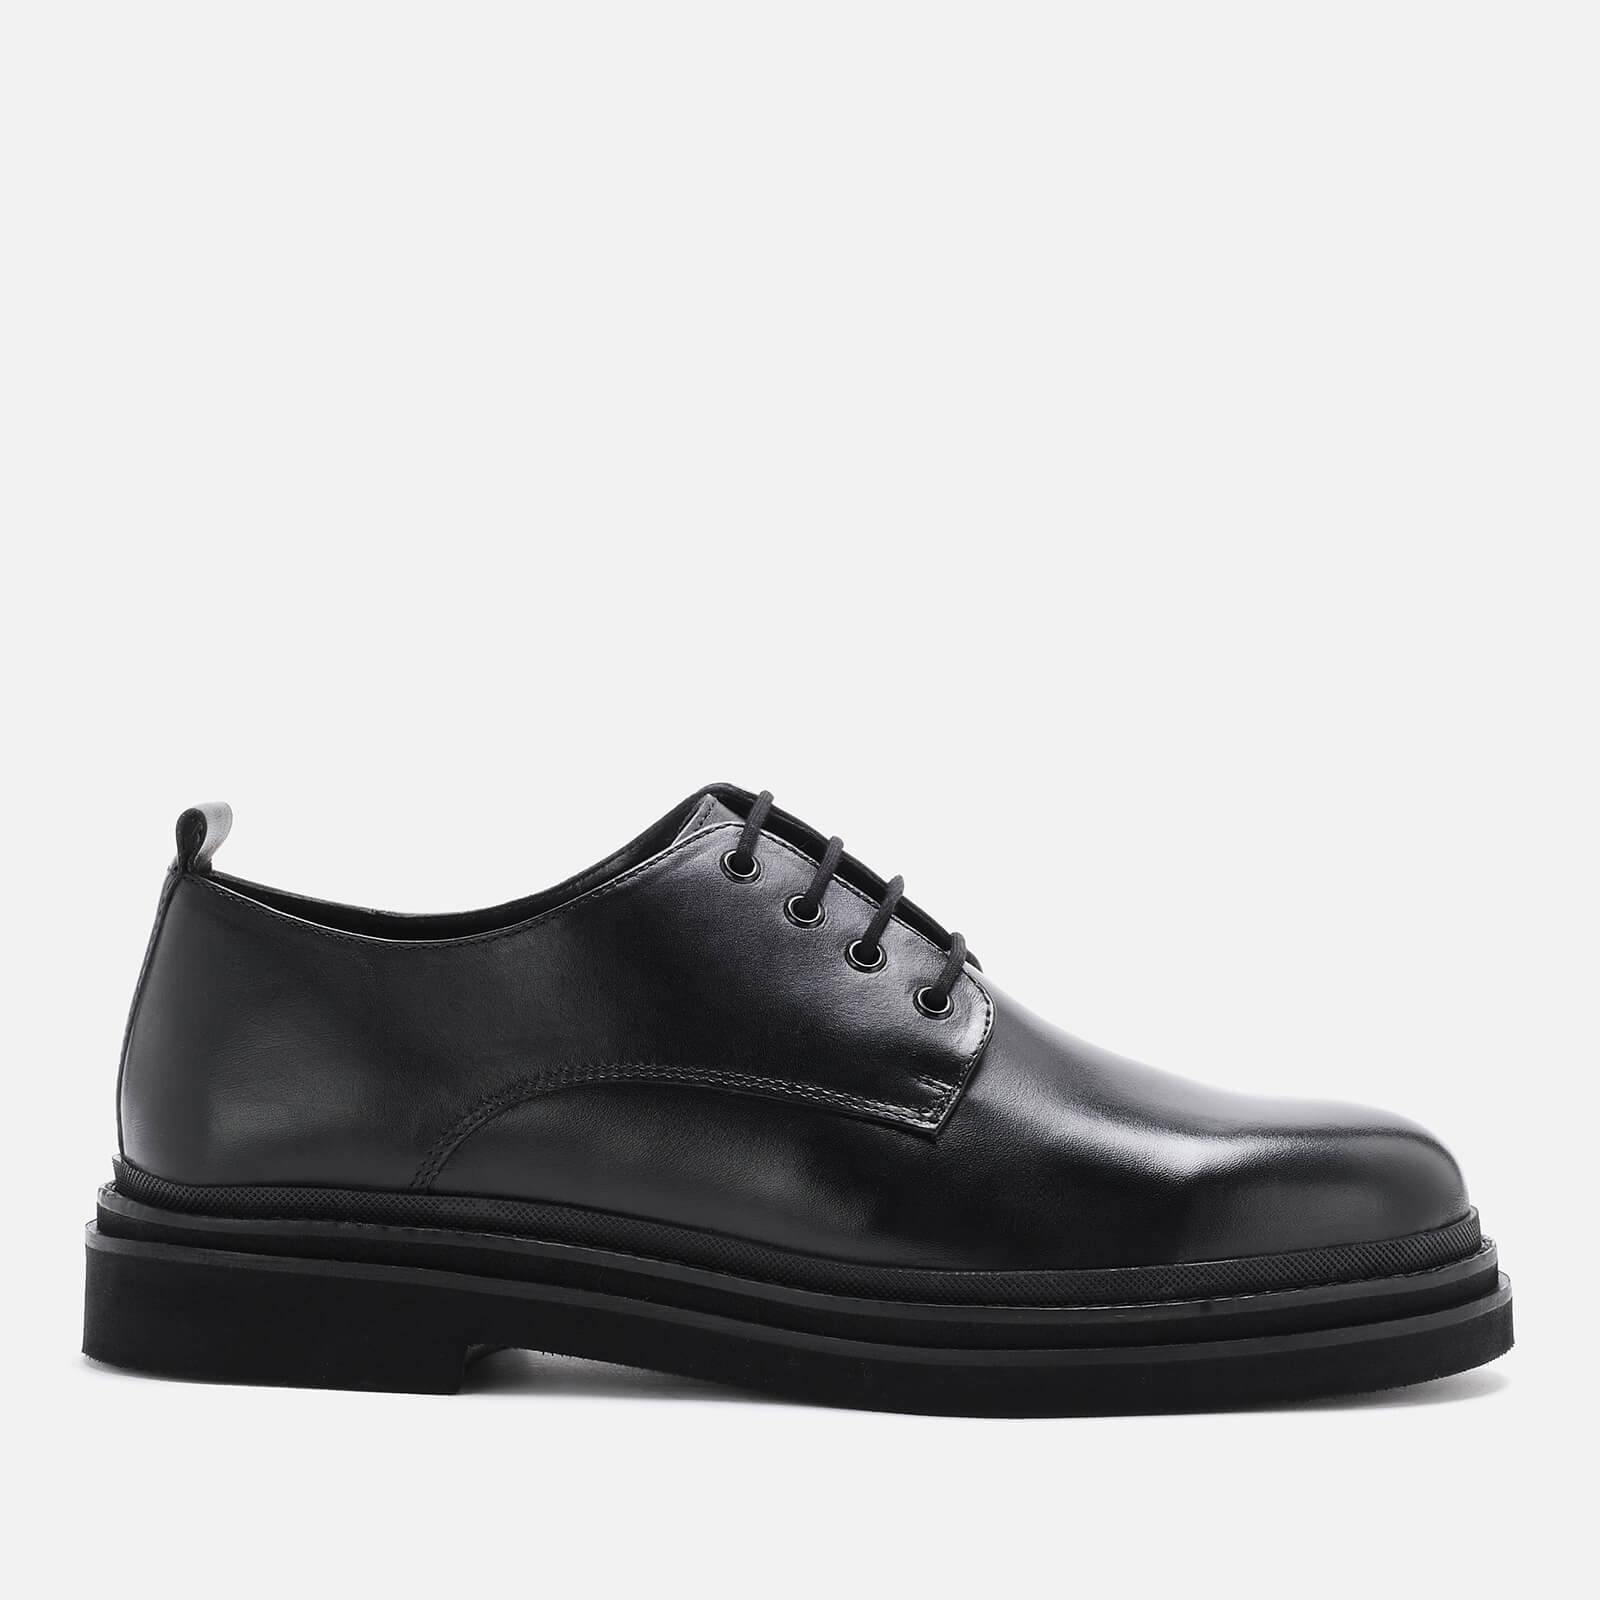 Walk London Men’s Brooklyn Leather Derby Shoes - Black